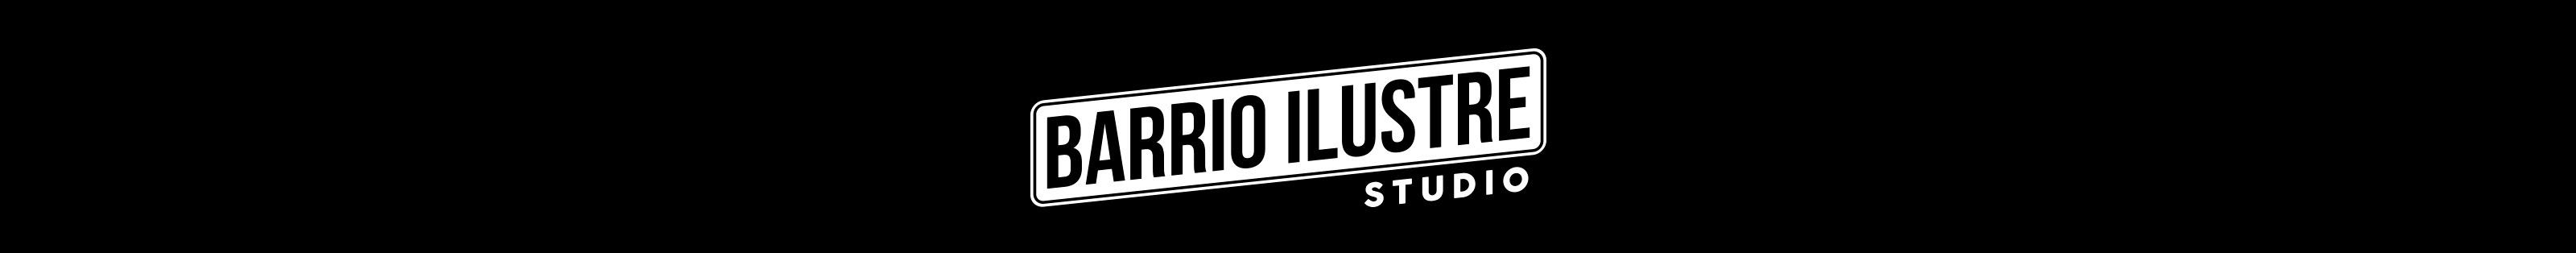 Barrio Ilustre Studio's profile banner